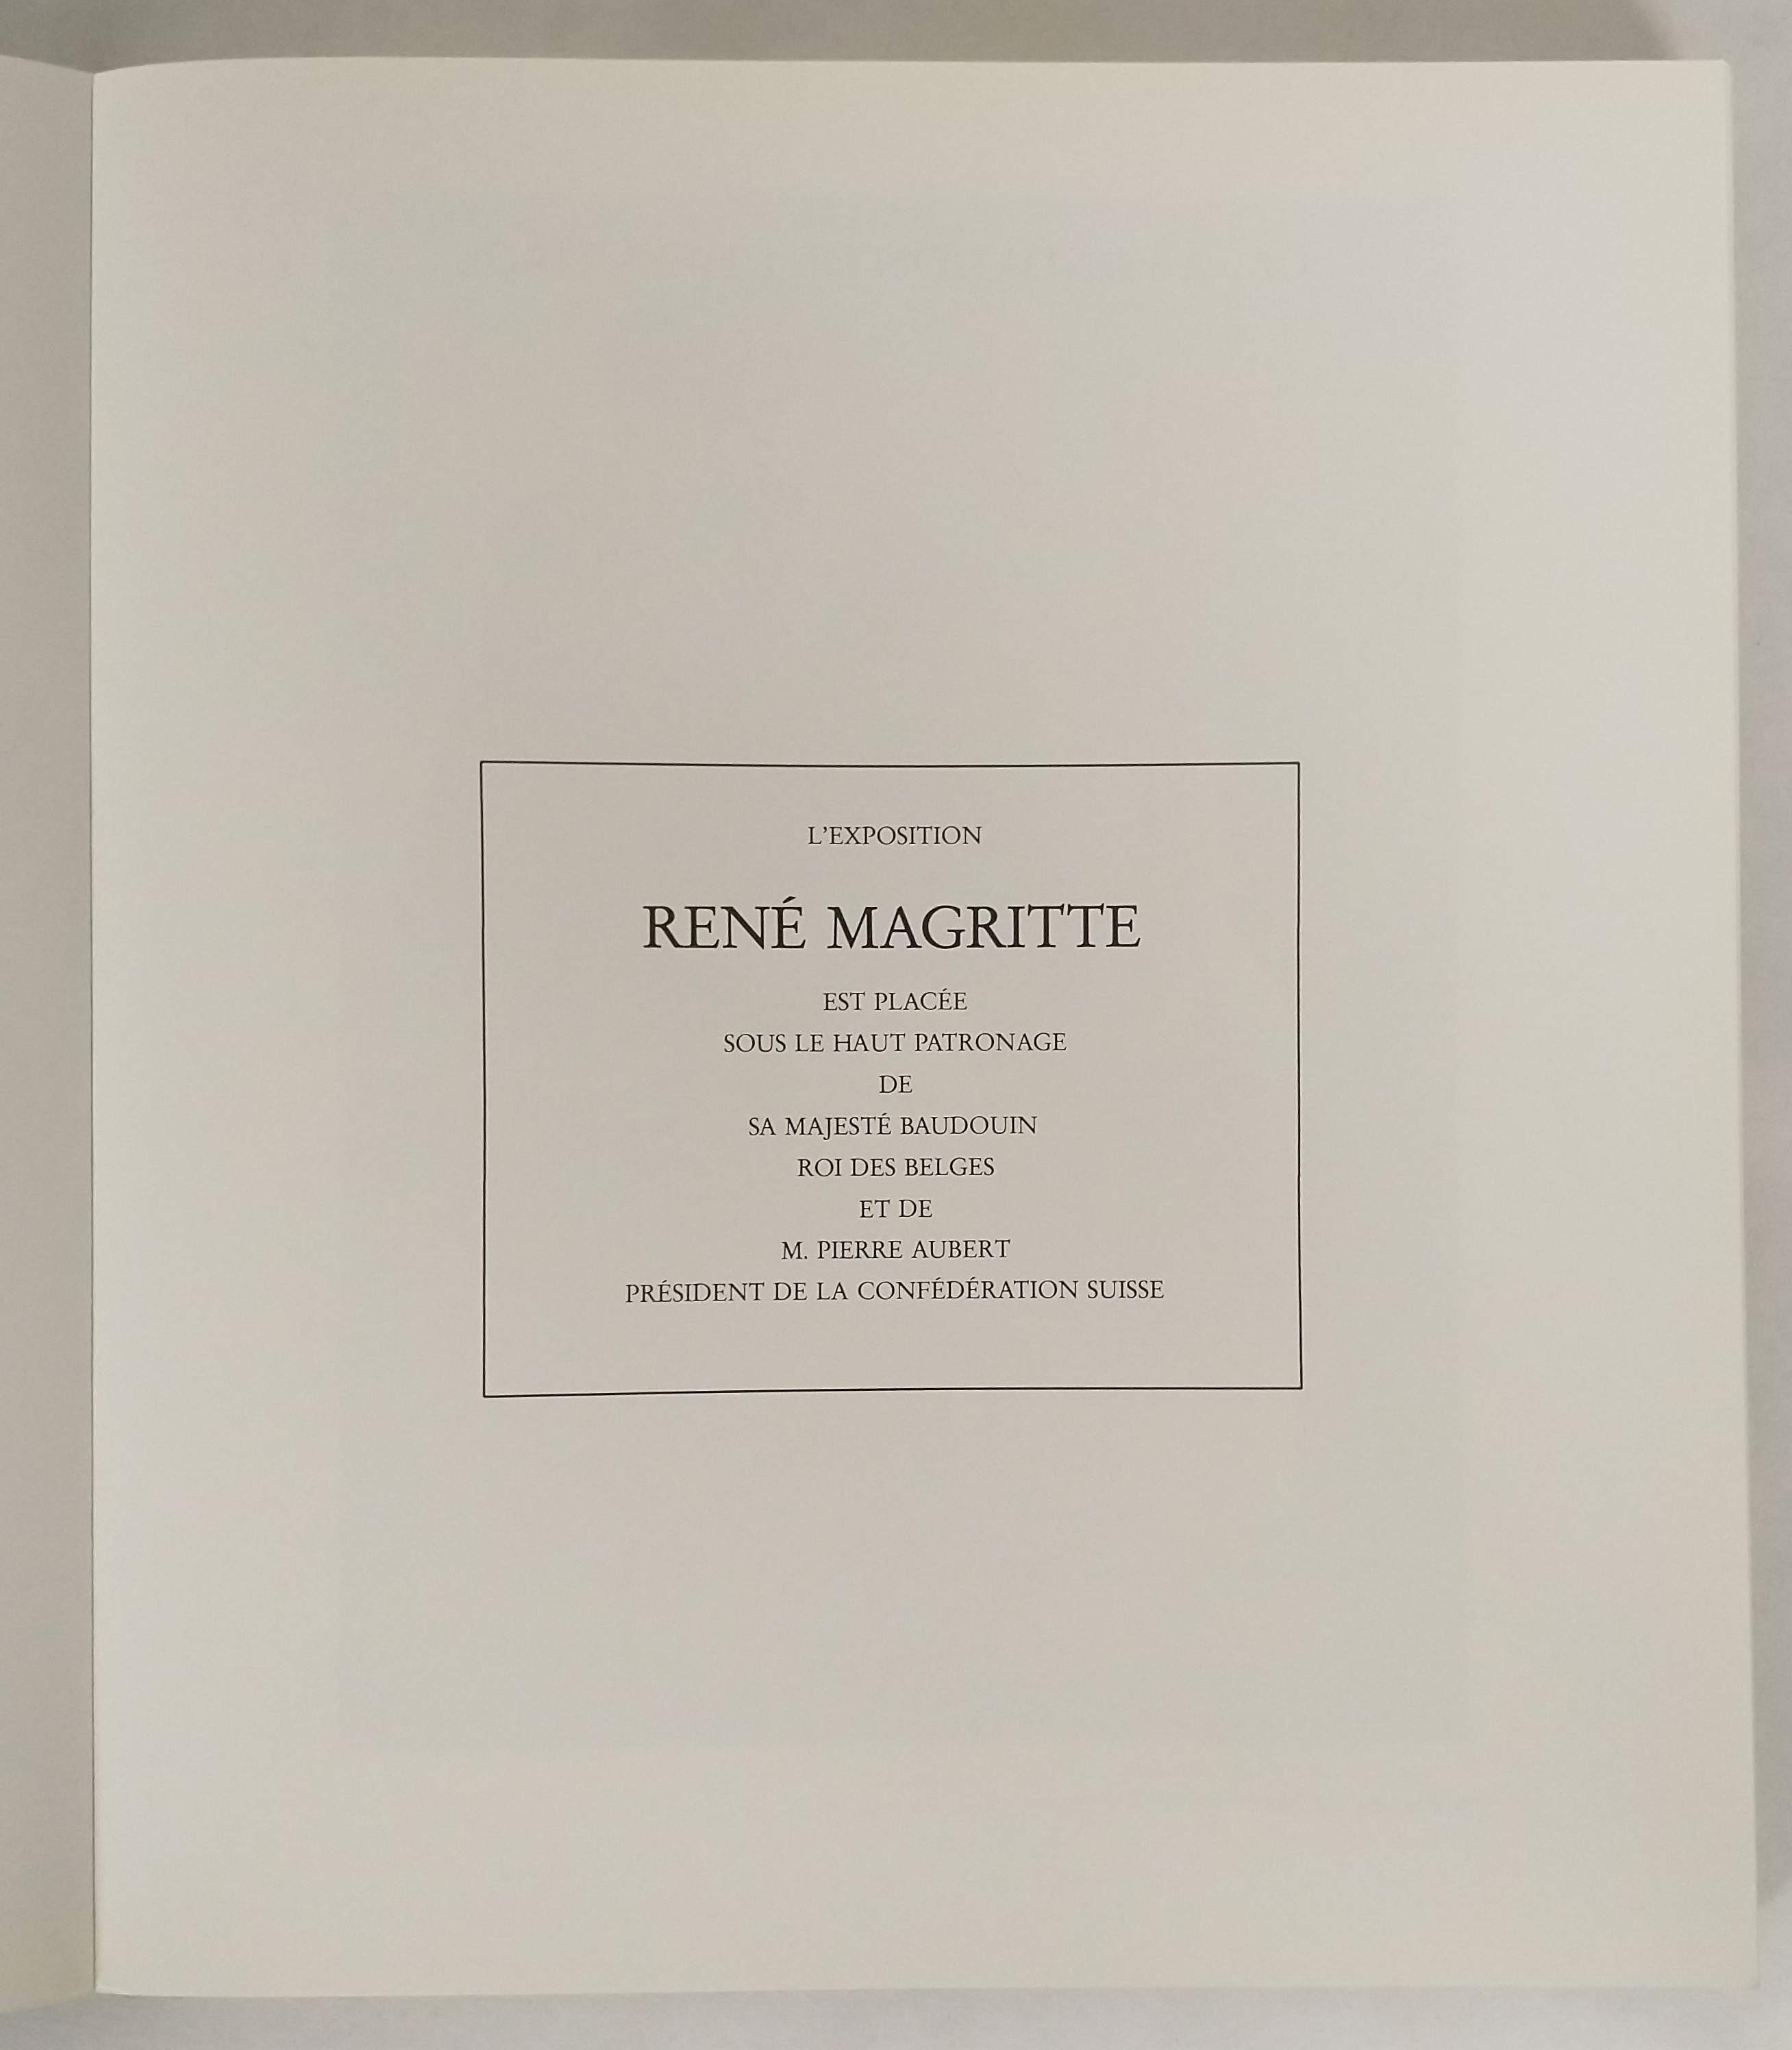 René Magritte - Fondation de l'Hermitage